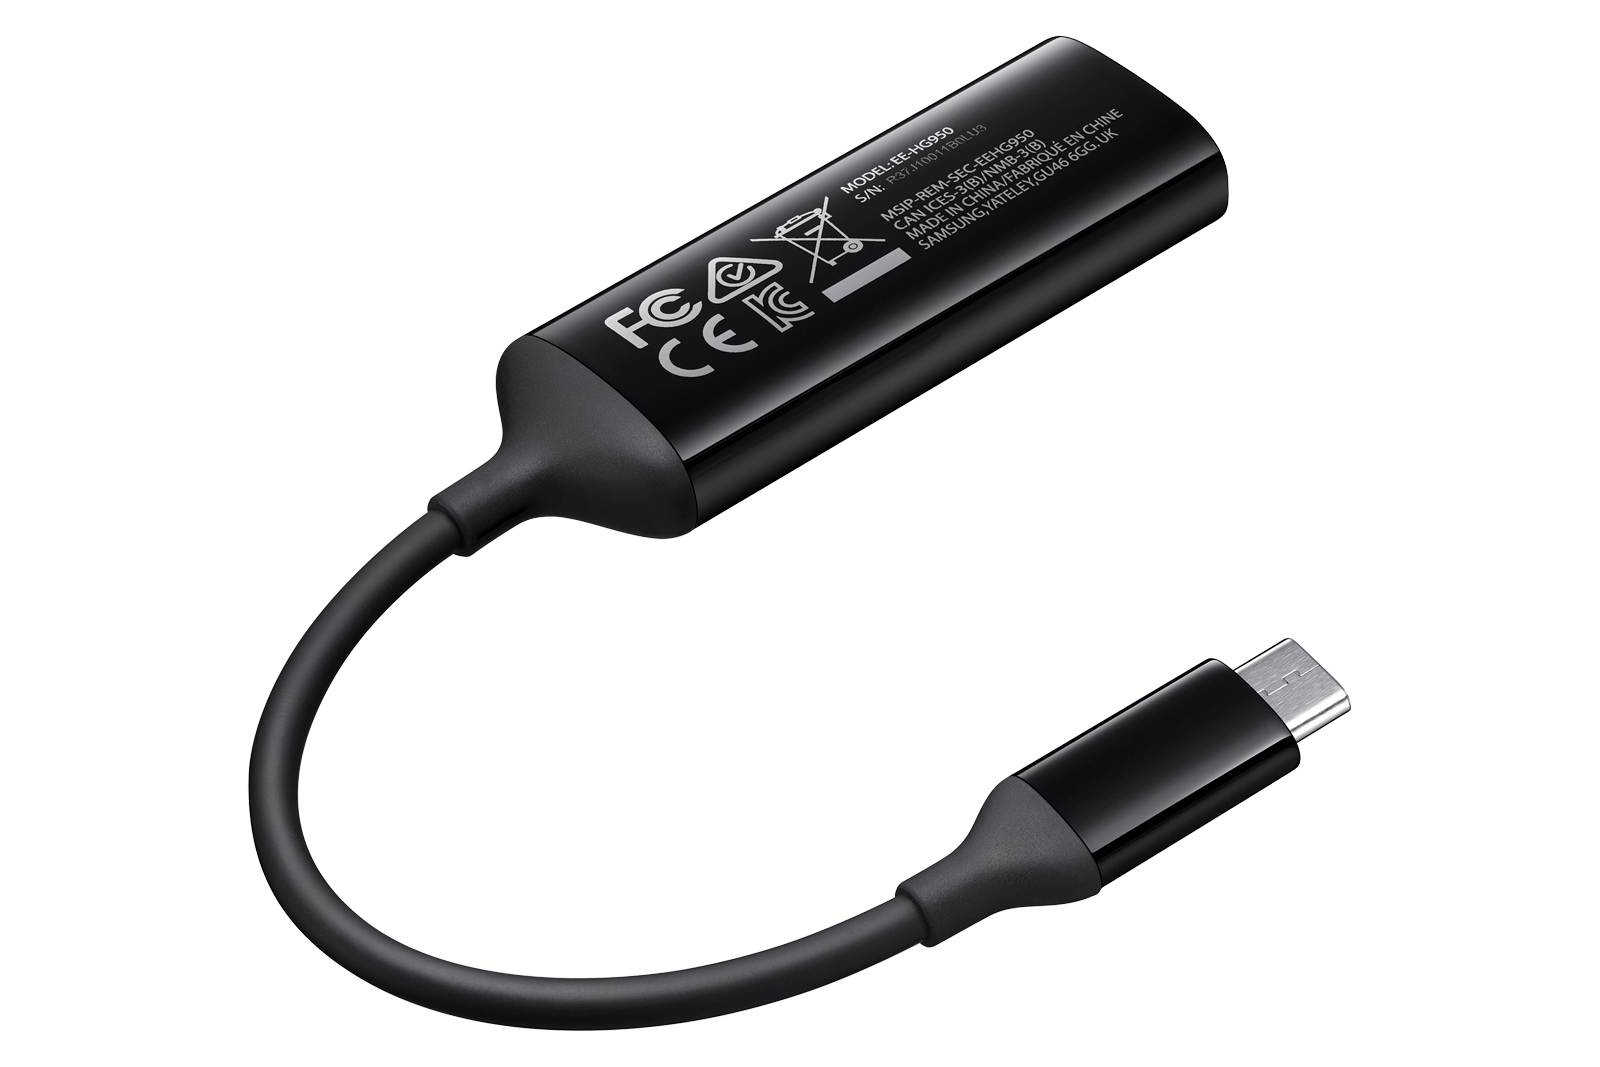 USB-C to HDMI Accessories - EE-HG950DBEGWW | Samsung US